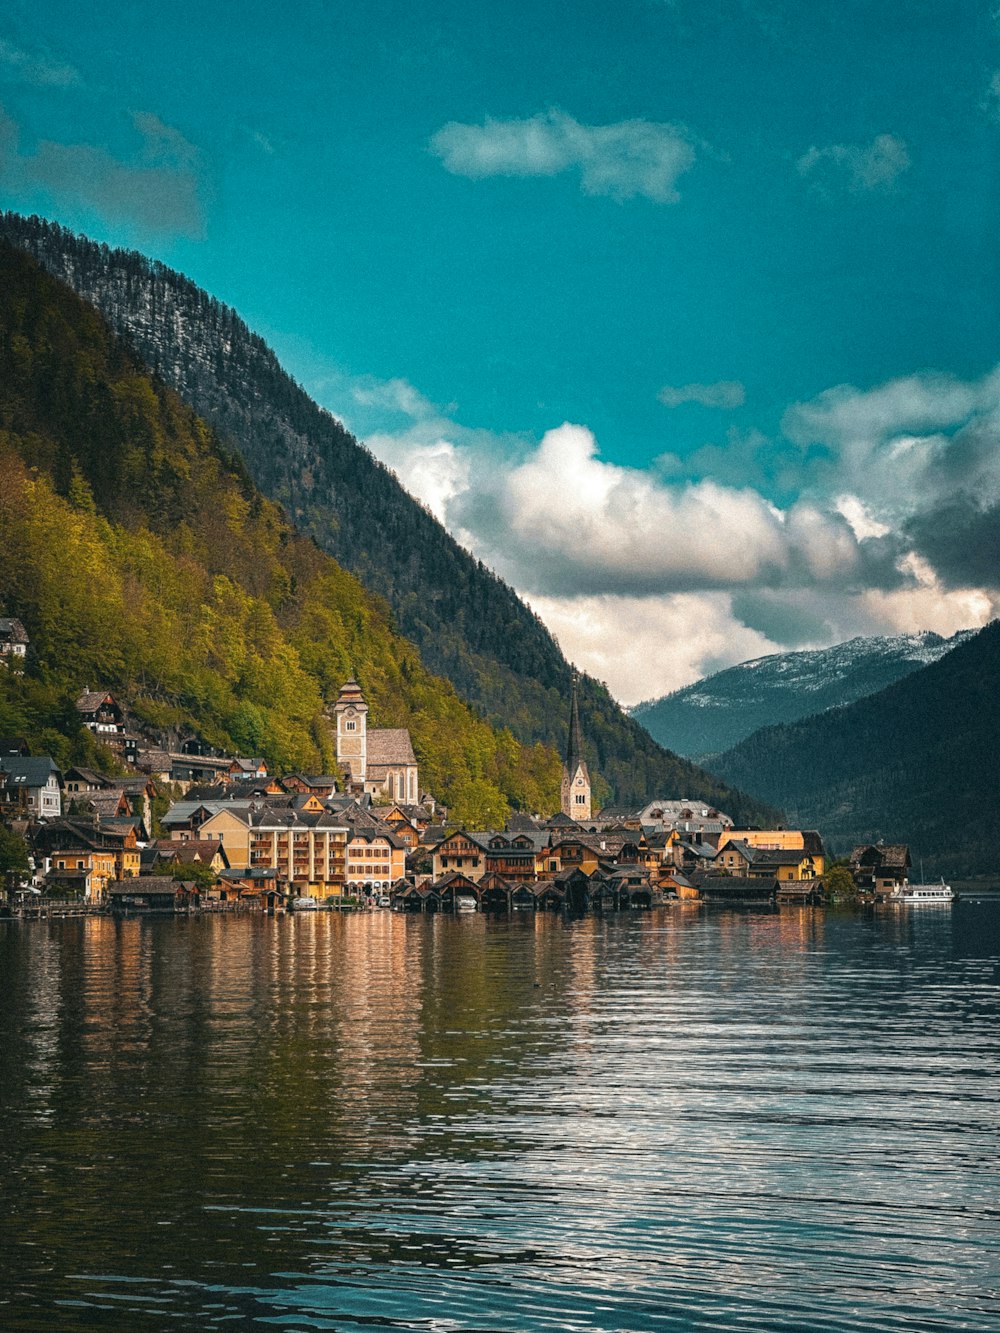 ein kleines Dorf am Ufer eines Sees